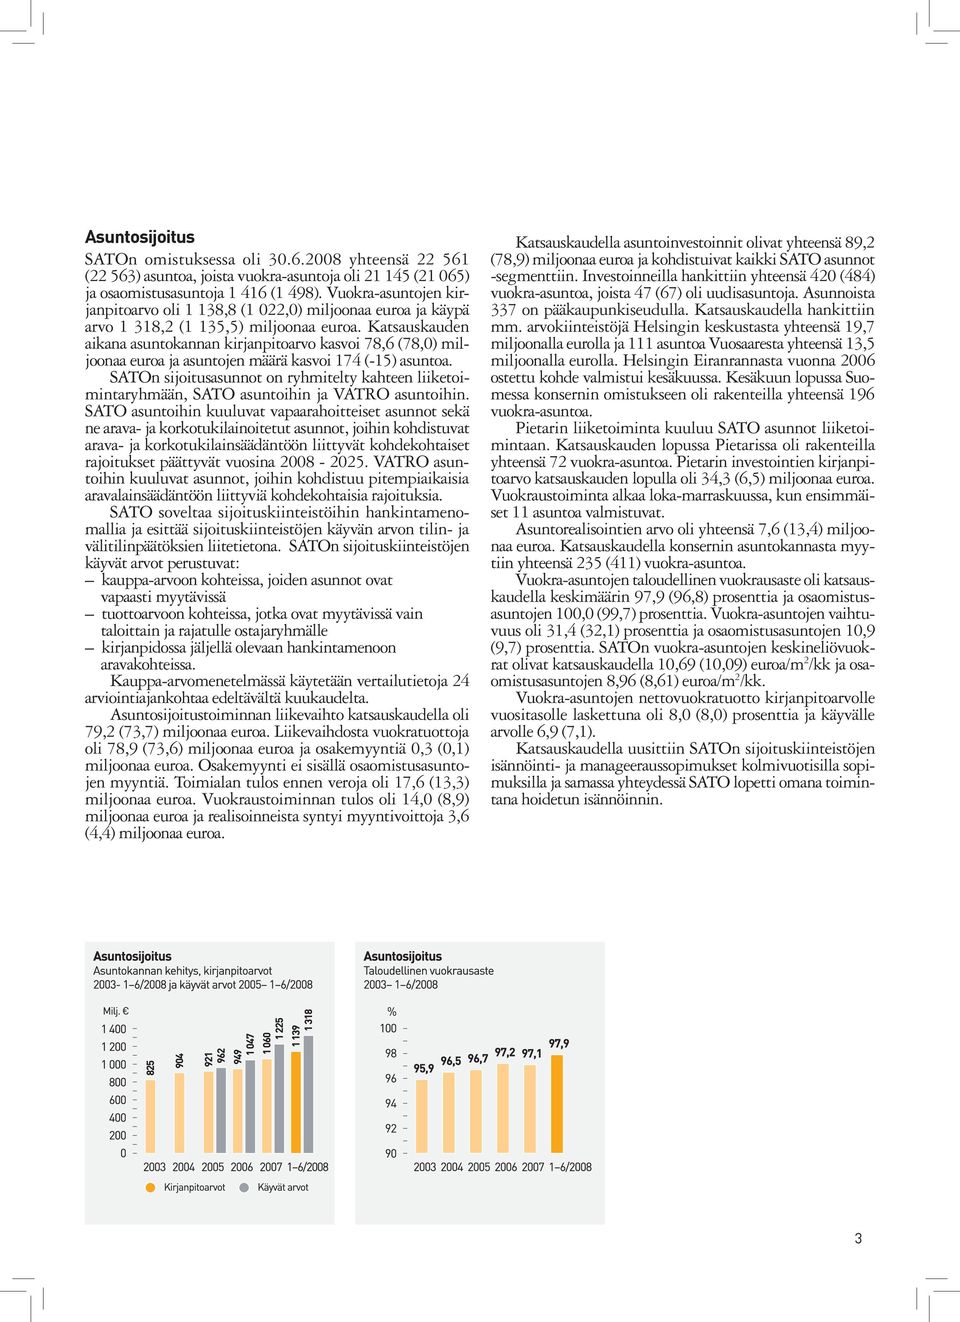 Katsauskauden aikana asuntokannan kirjanpitoarvo kasvoi 78,6 (78,0) miljoonaa euroa ja asuntojen määrä kasvoi 174 (-15) asuntoa.